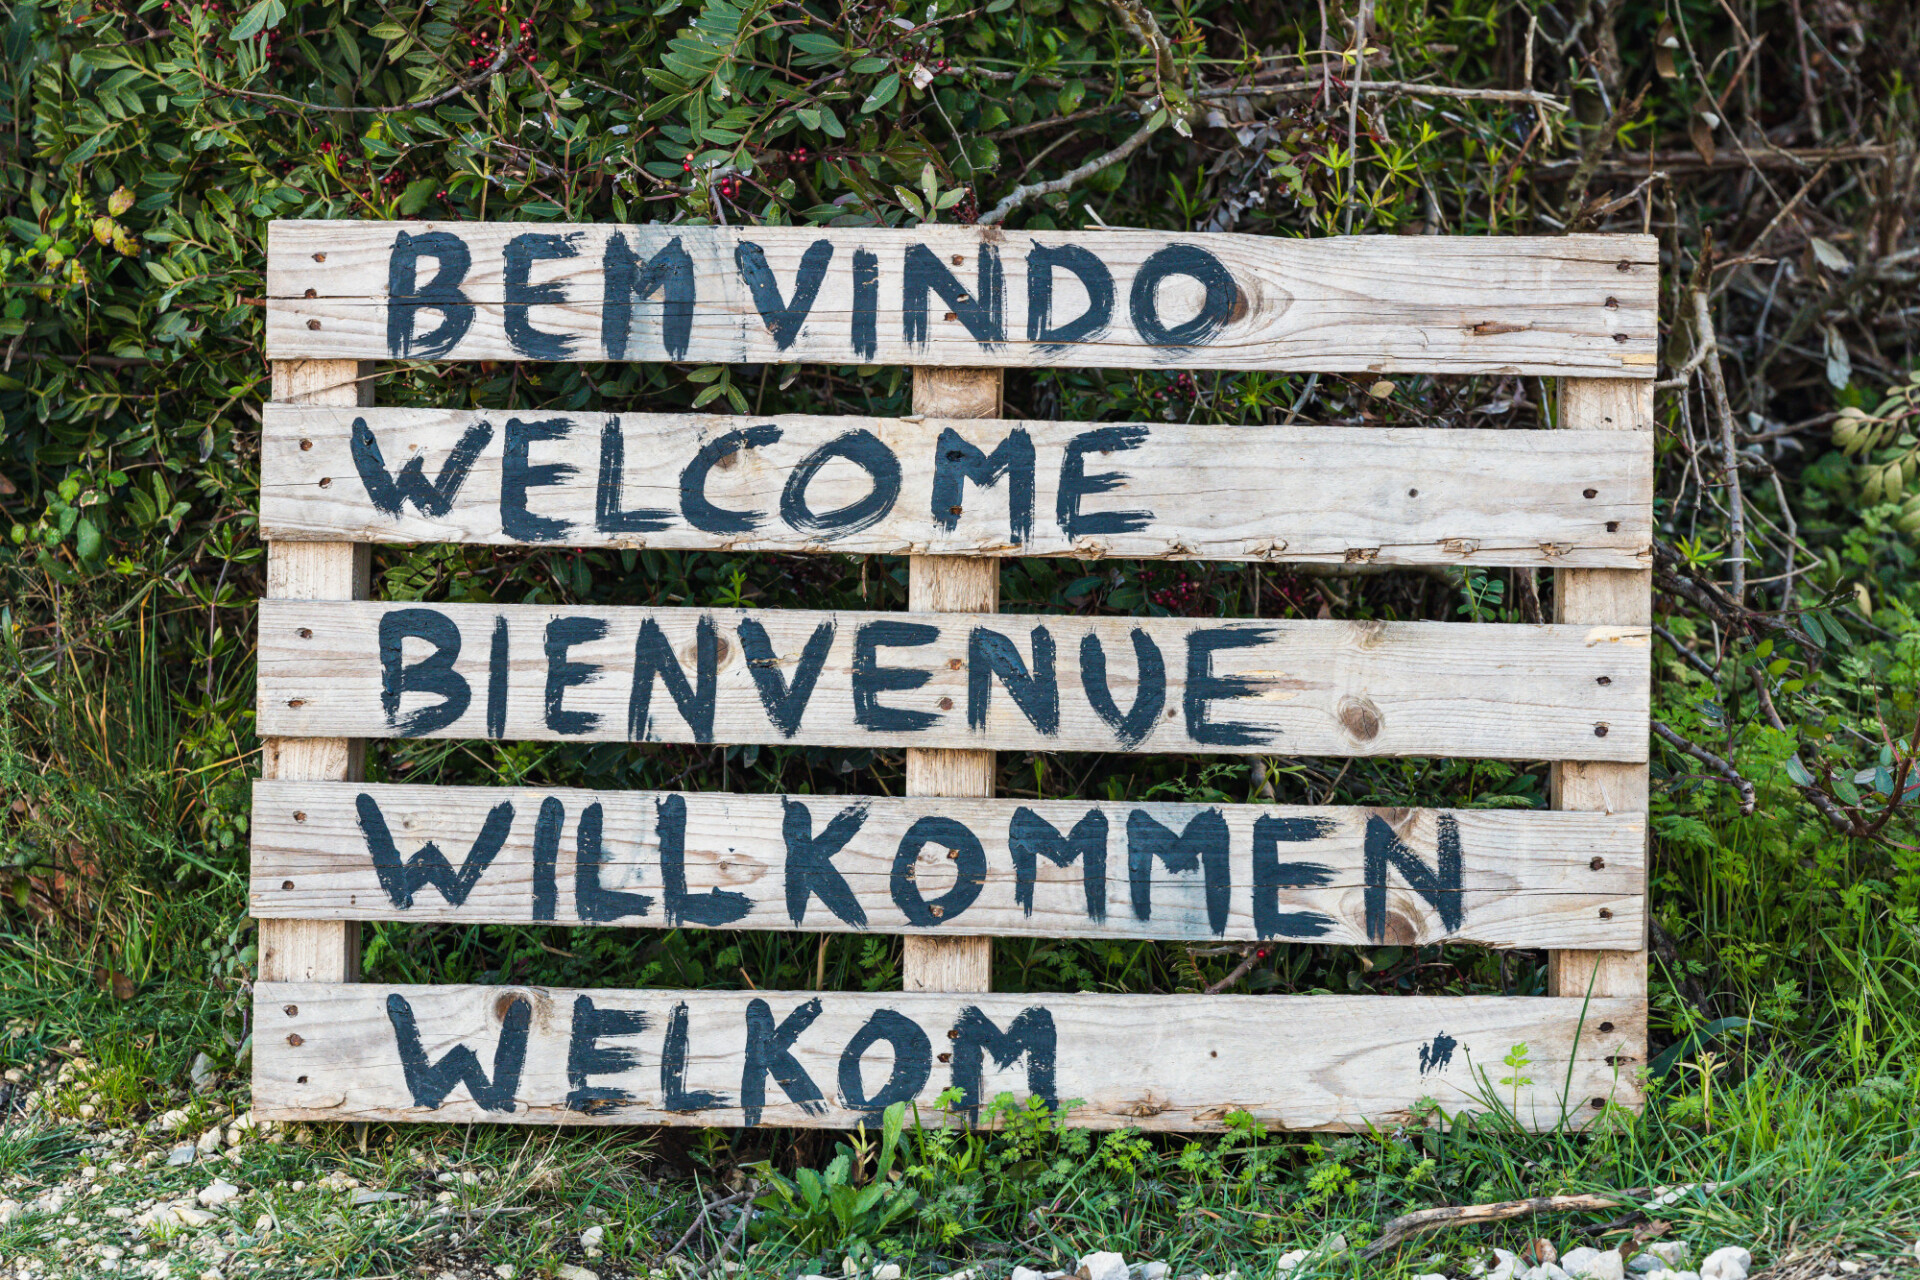 Bemvindo, Welcome, Bienvenue, willkommen, welkom - in several languages